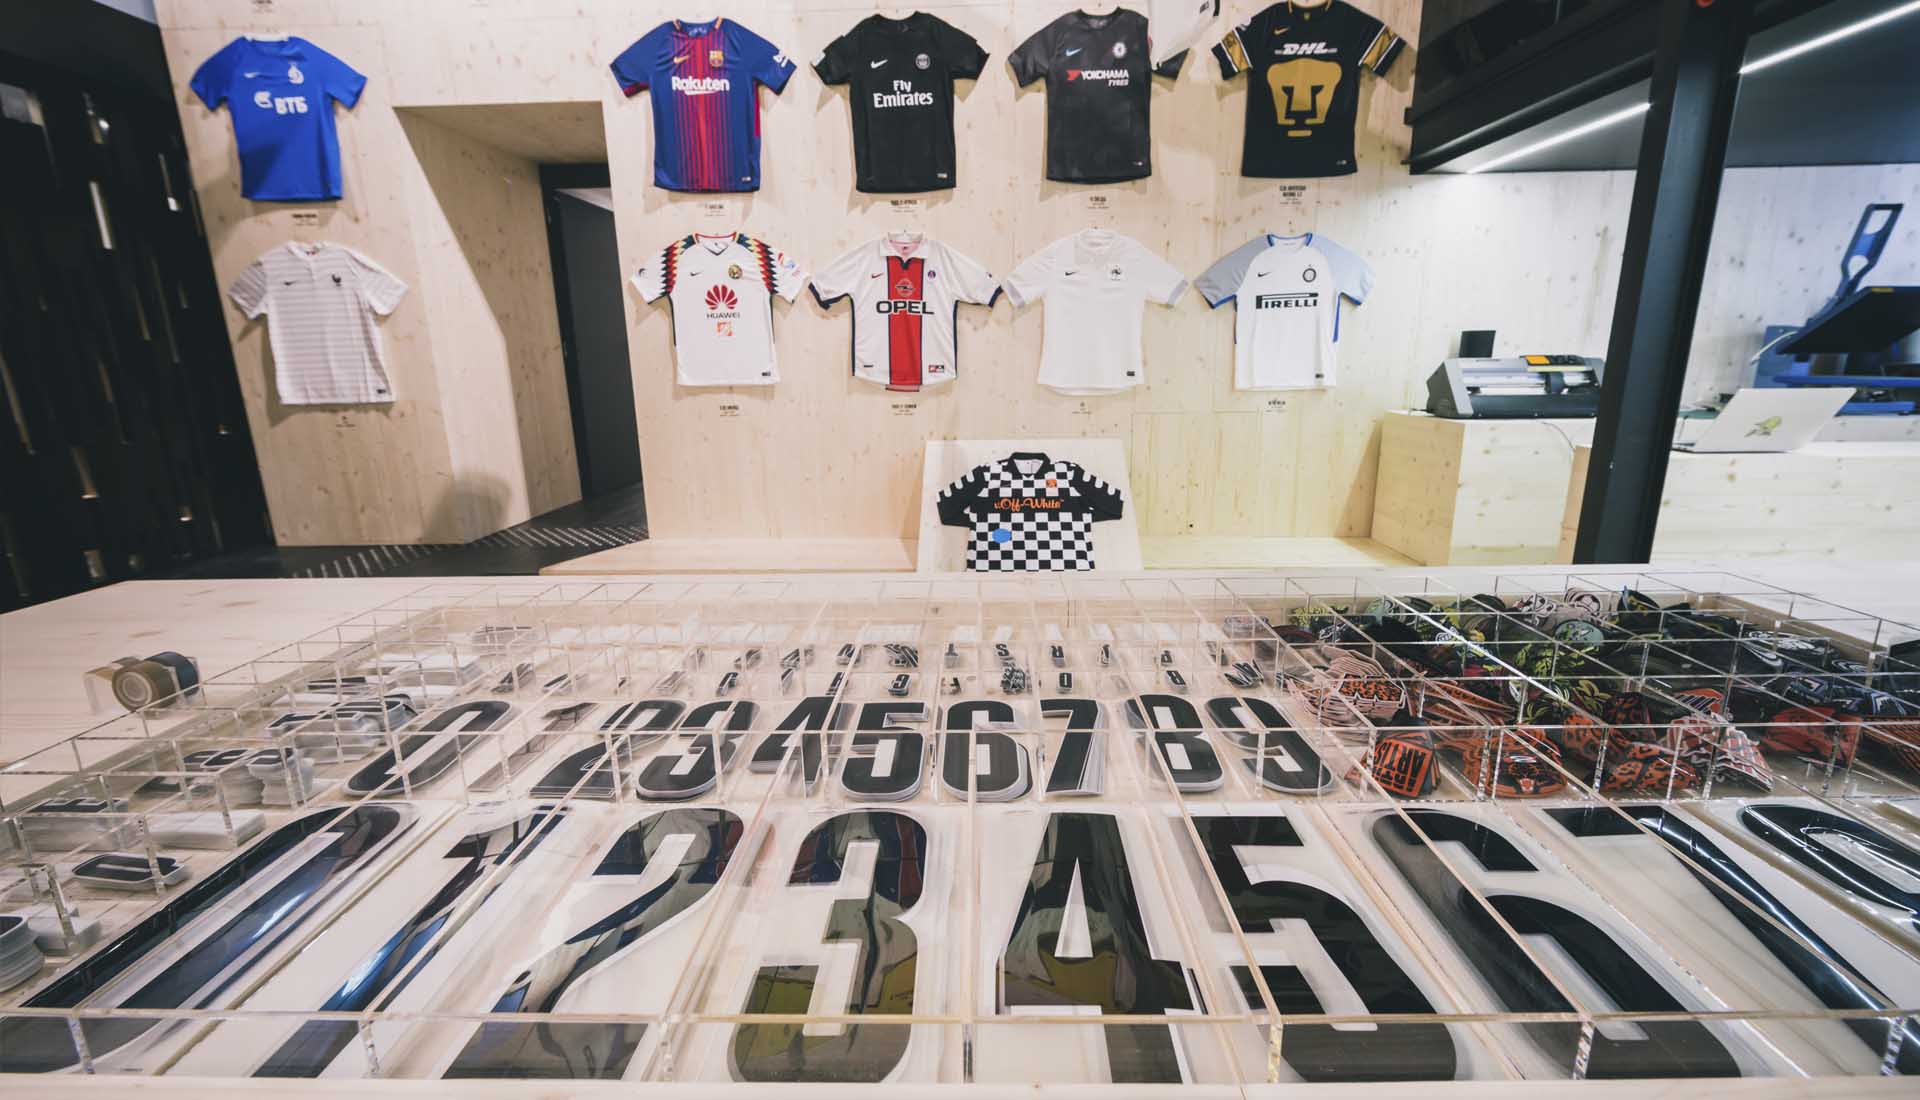 Sociable botón Pascua de Resurrección Nike celebrates the jersey culture with Milan's exhibition